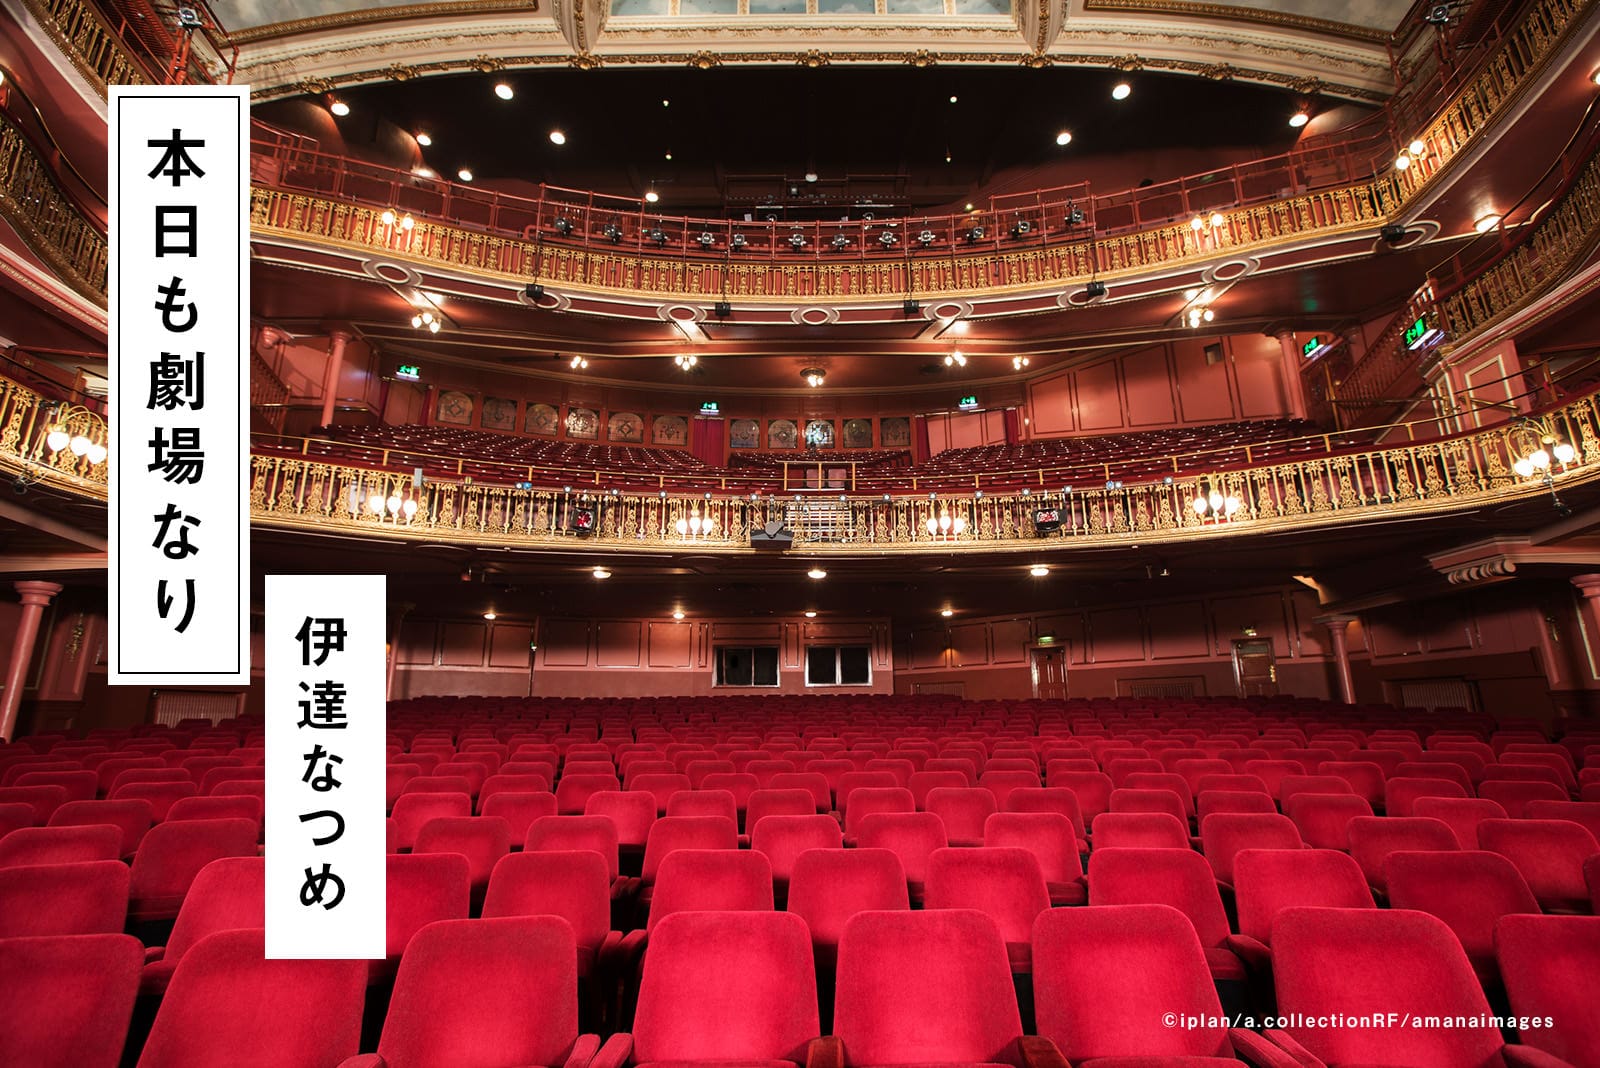 #13 シビウ国際演劇祭【後編】ラインナップにみる独自性